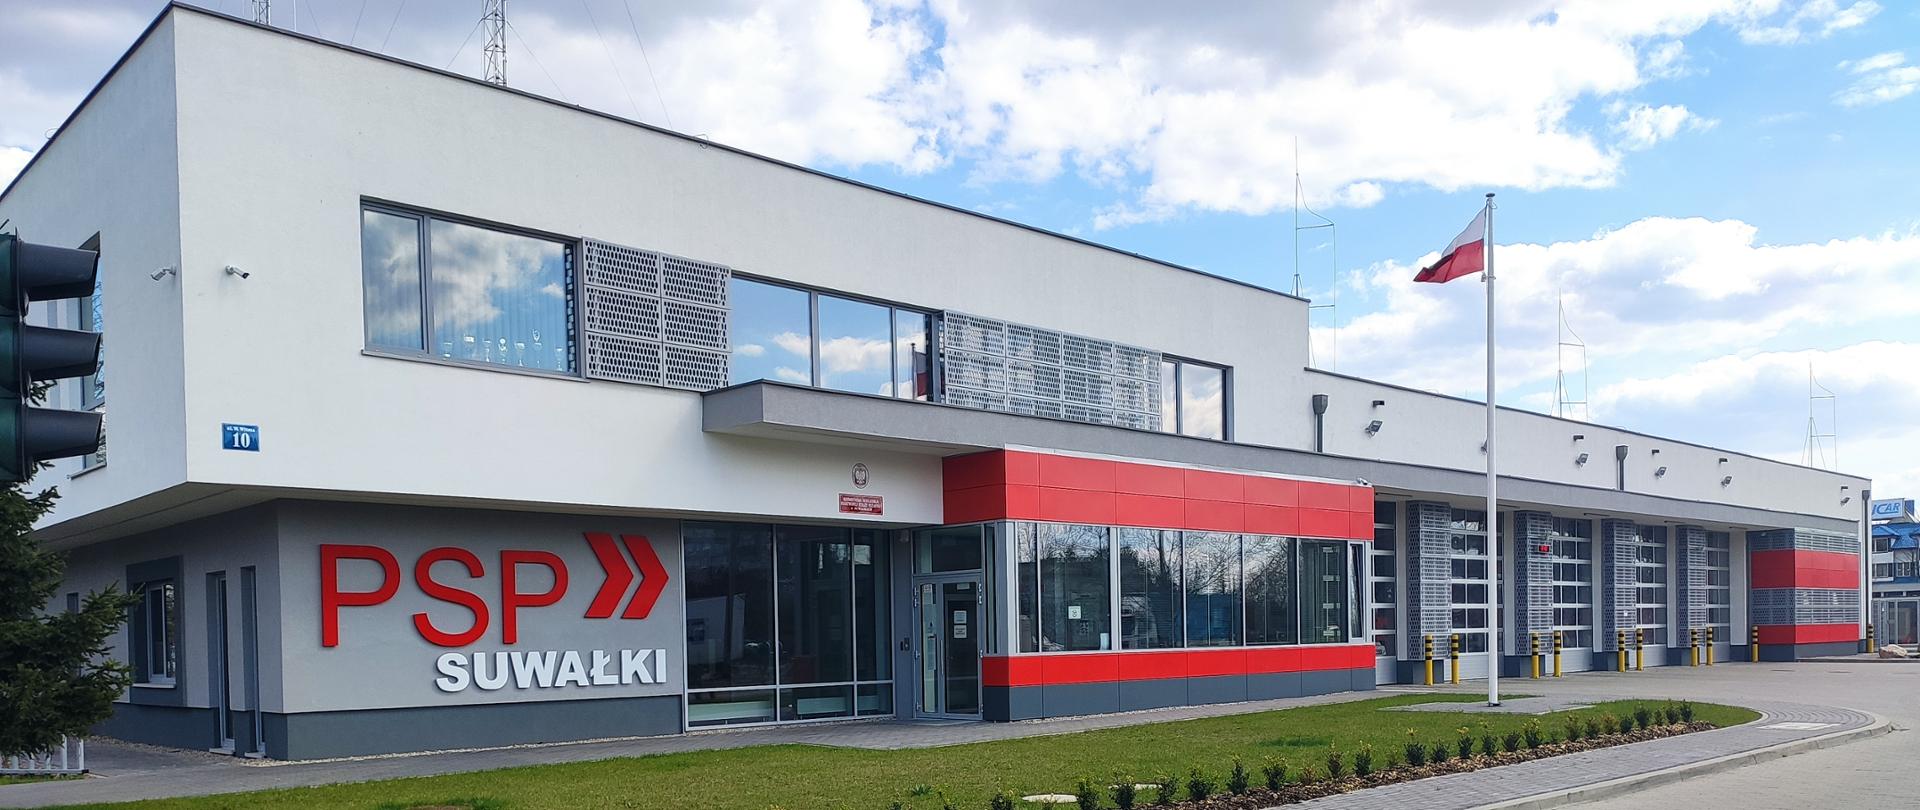 Zdjęcie obrazuje budynek KM PSP w Suwałkach na ścianie napis PSP SUWAŁKI przed budynkiem maszt z flaga państwową 